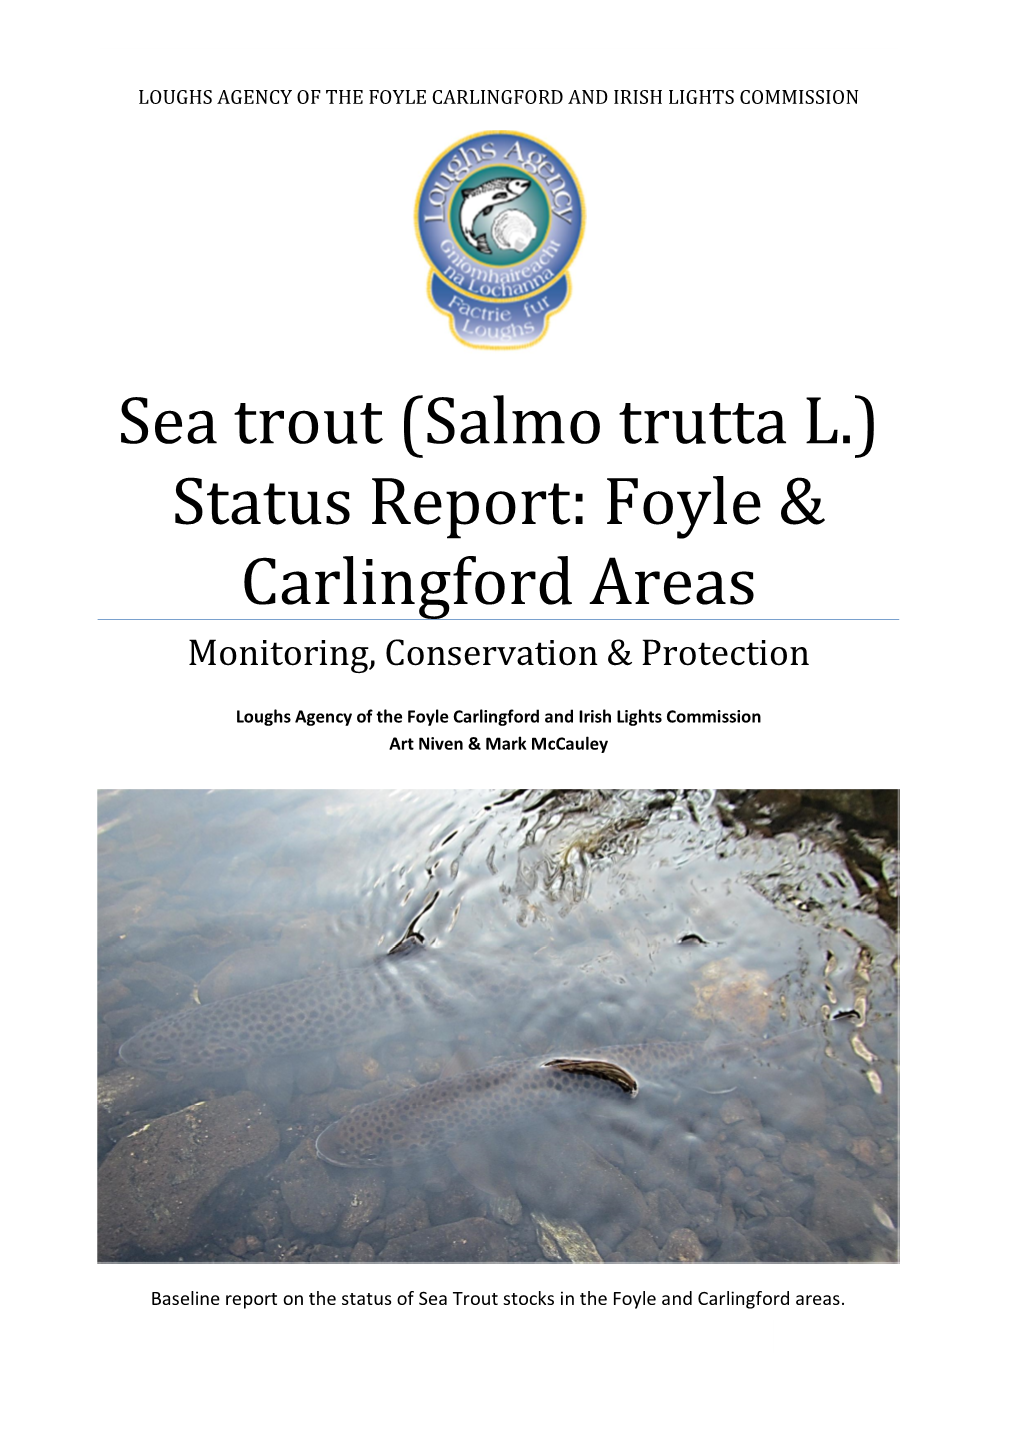 Sea Trout (Salmo Trutta L.) Status Report: Foyle & Carlingford Areas